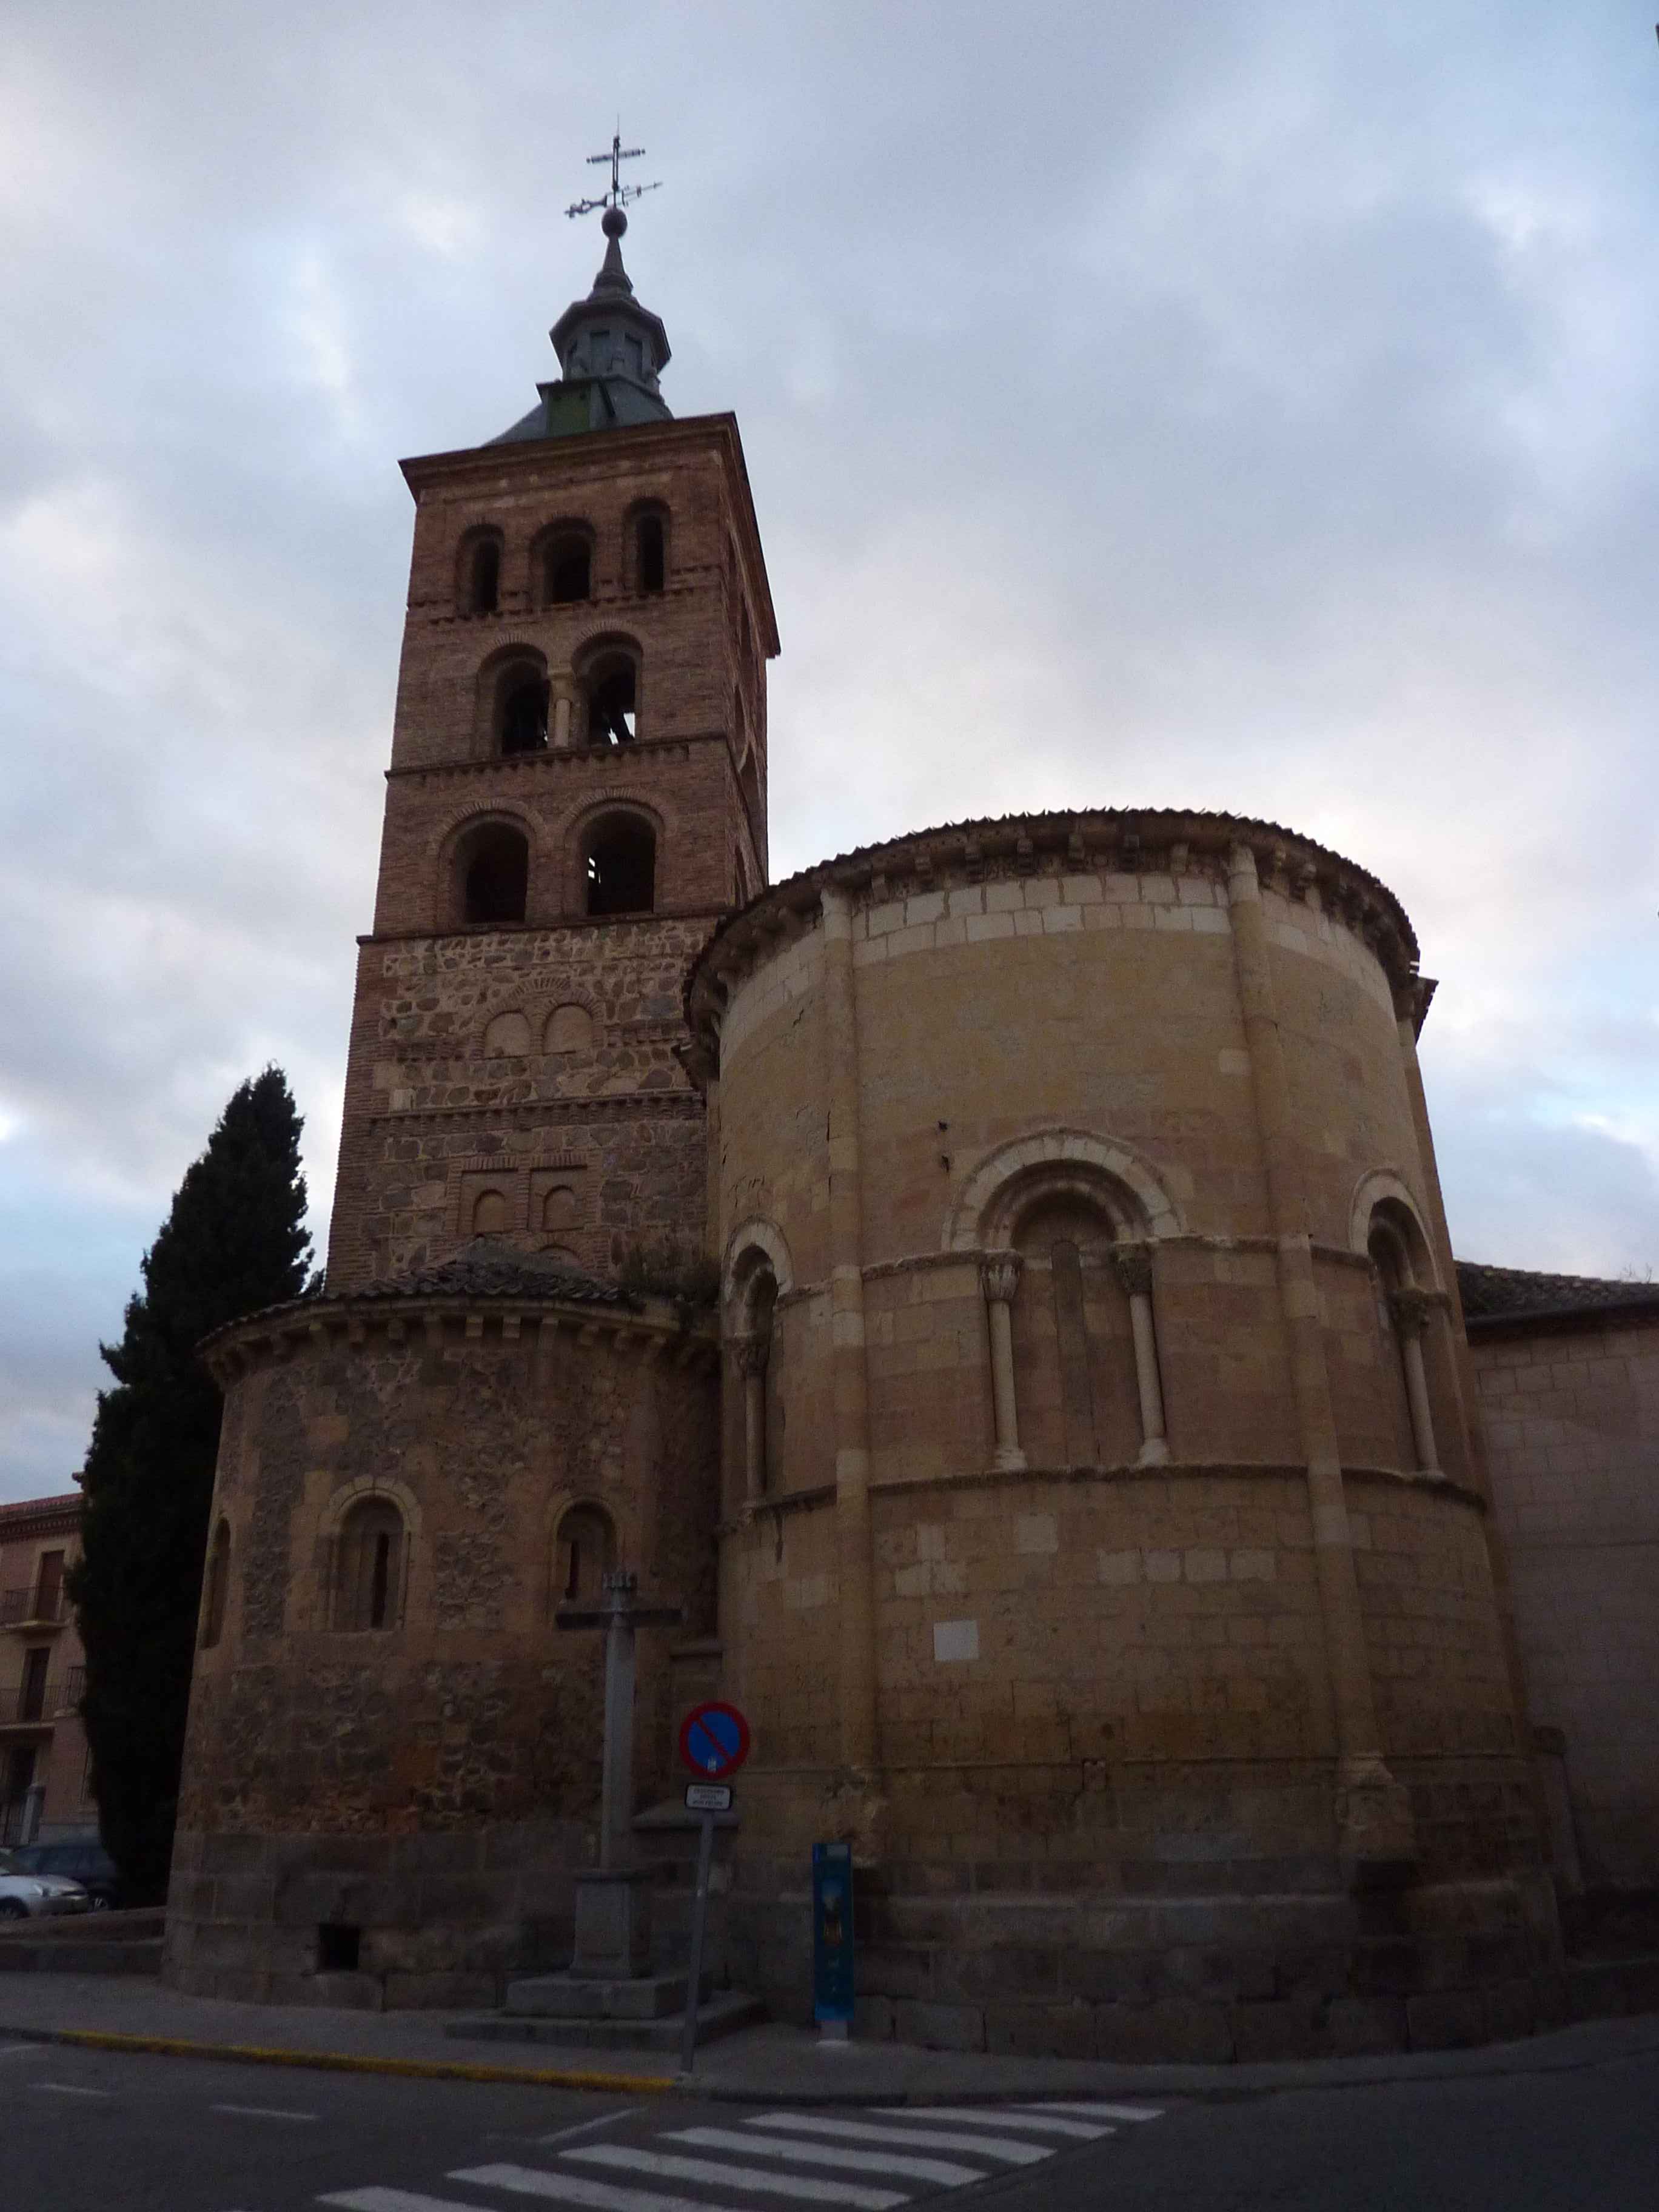 Clocher A Segovia en Images